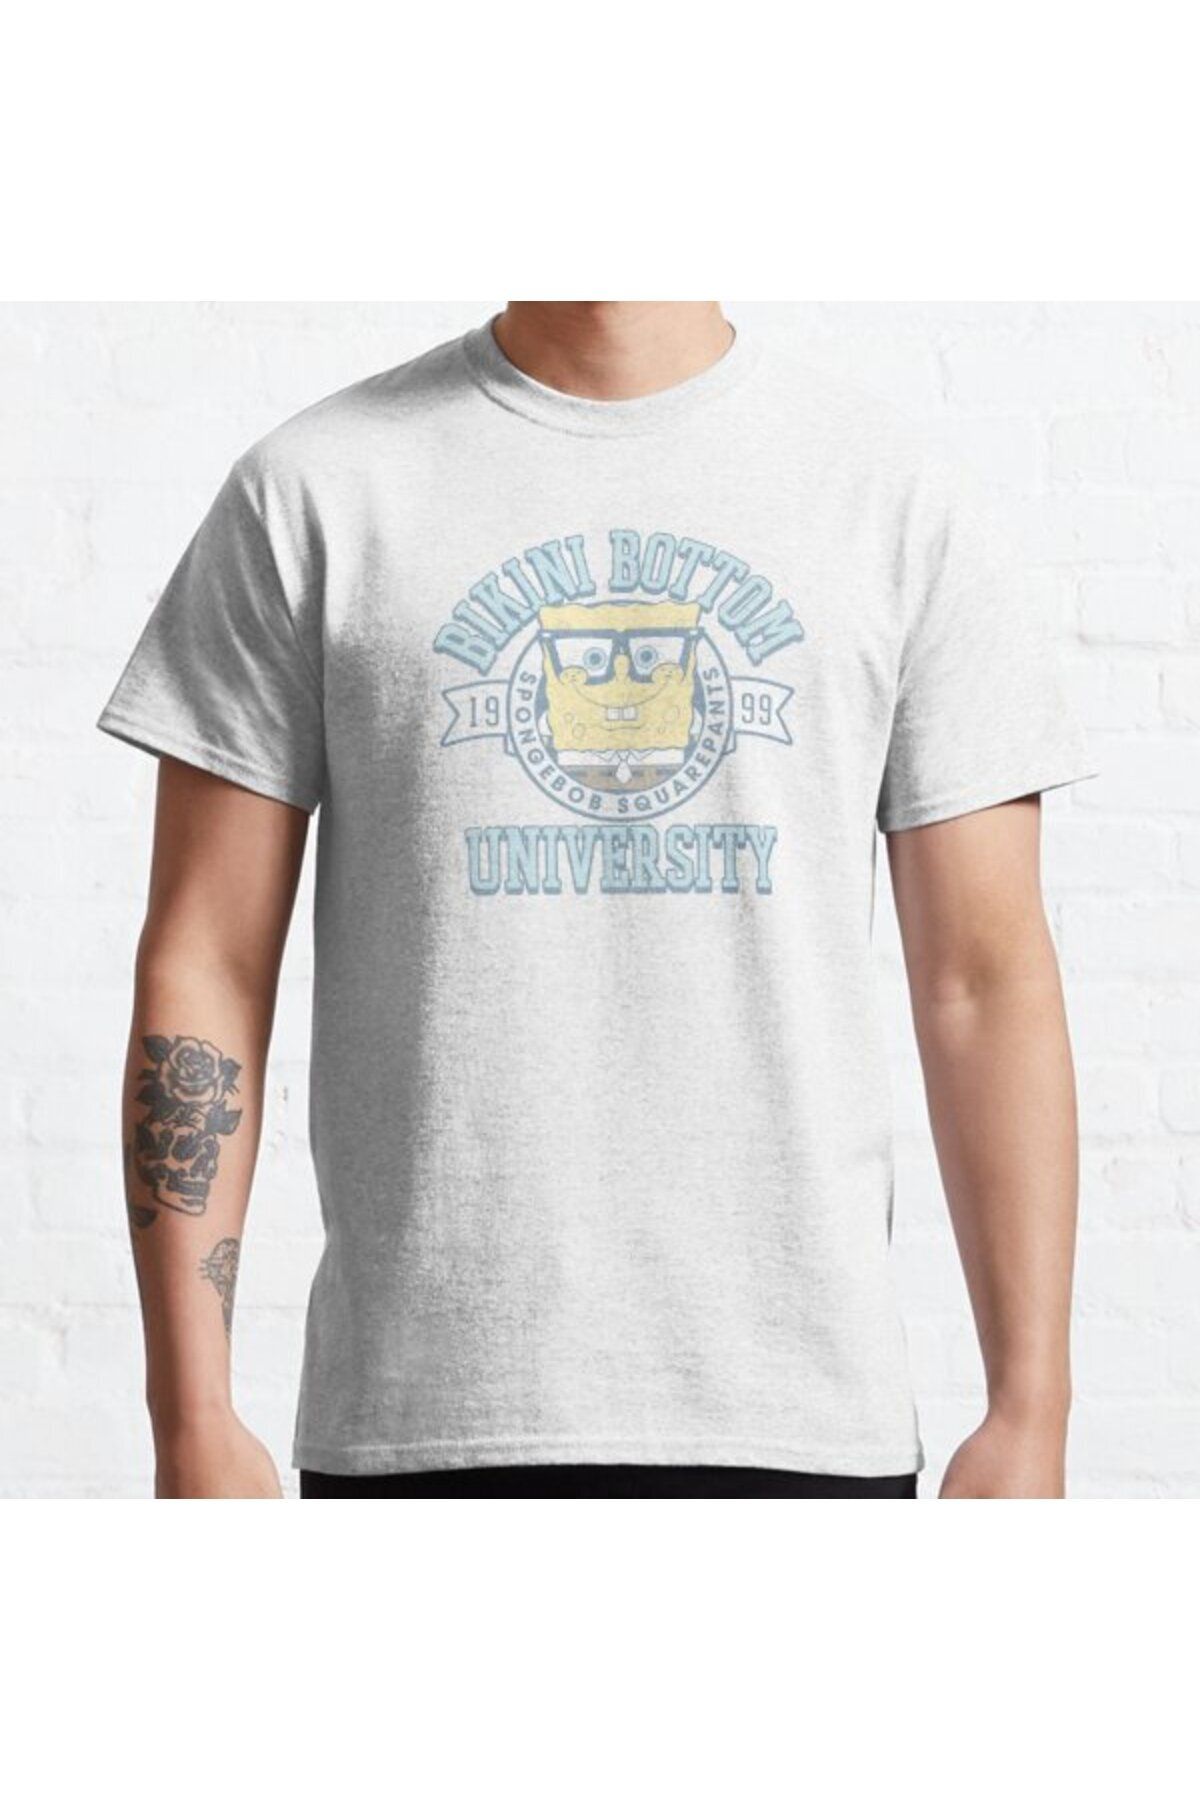 ZOKAWEAR Bol Kalıp Unisex Spongebob Squarepants Bikini Bottom University Tasarım Baskılı Tshirt